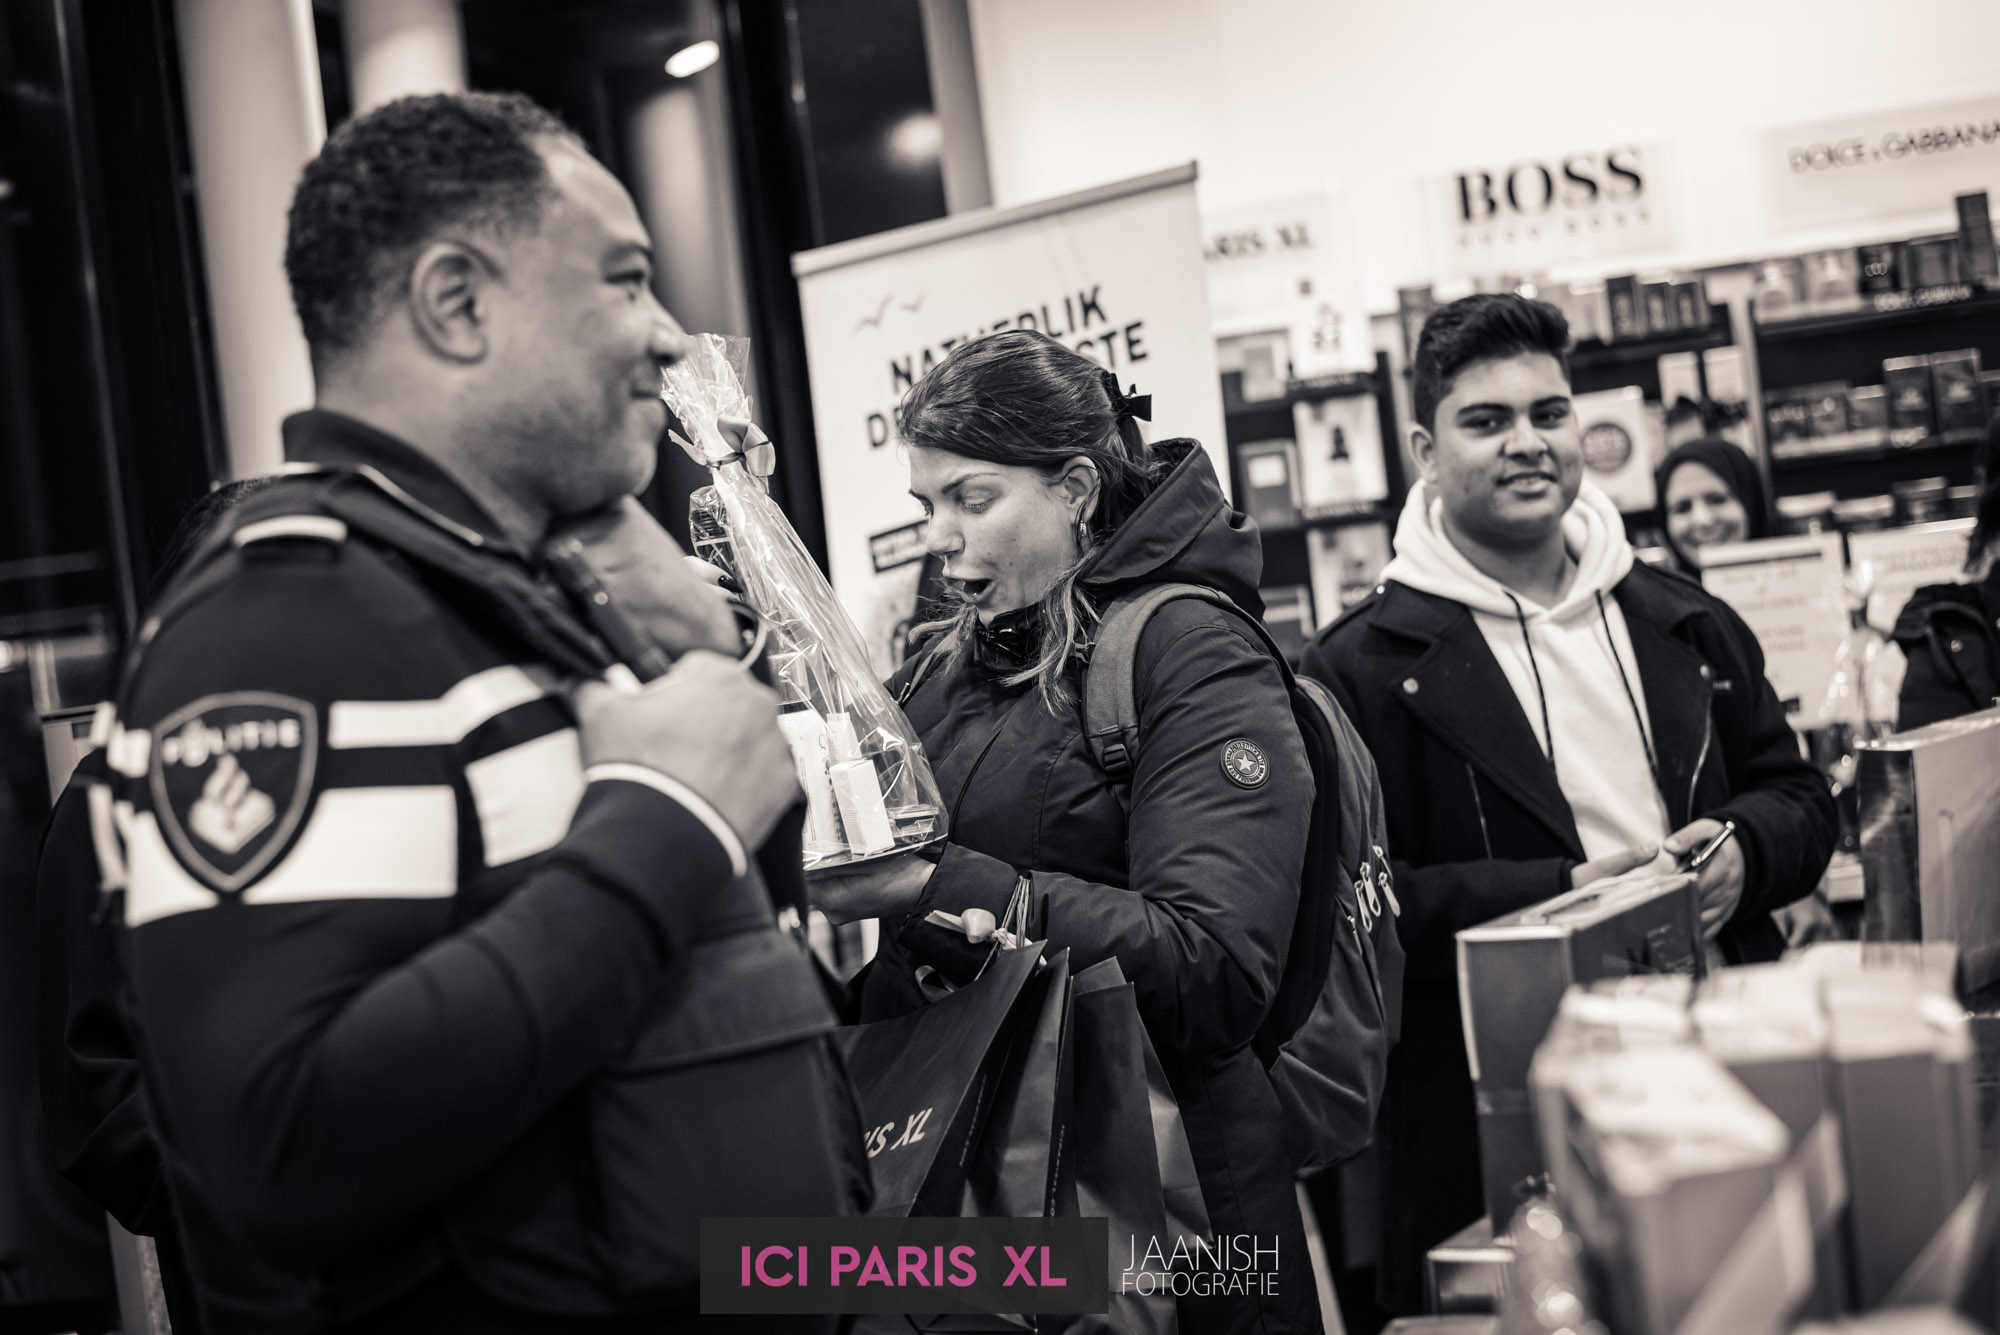 ICI Paris bedrijfsfeest evenement fotograaf in den haag 20